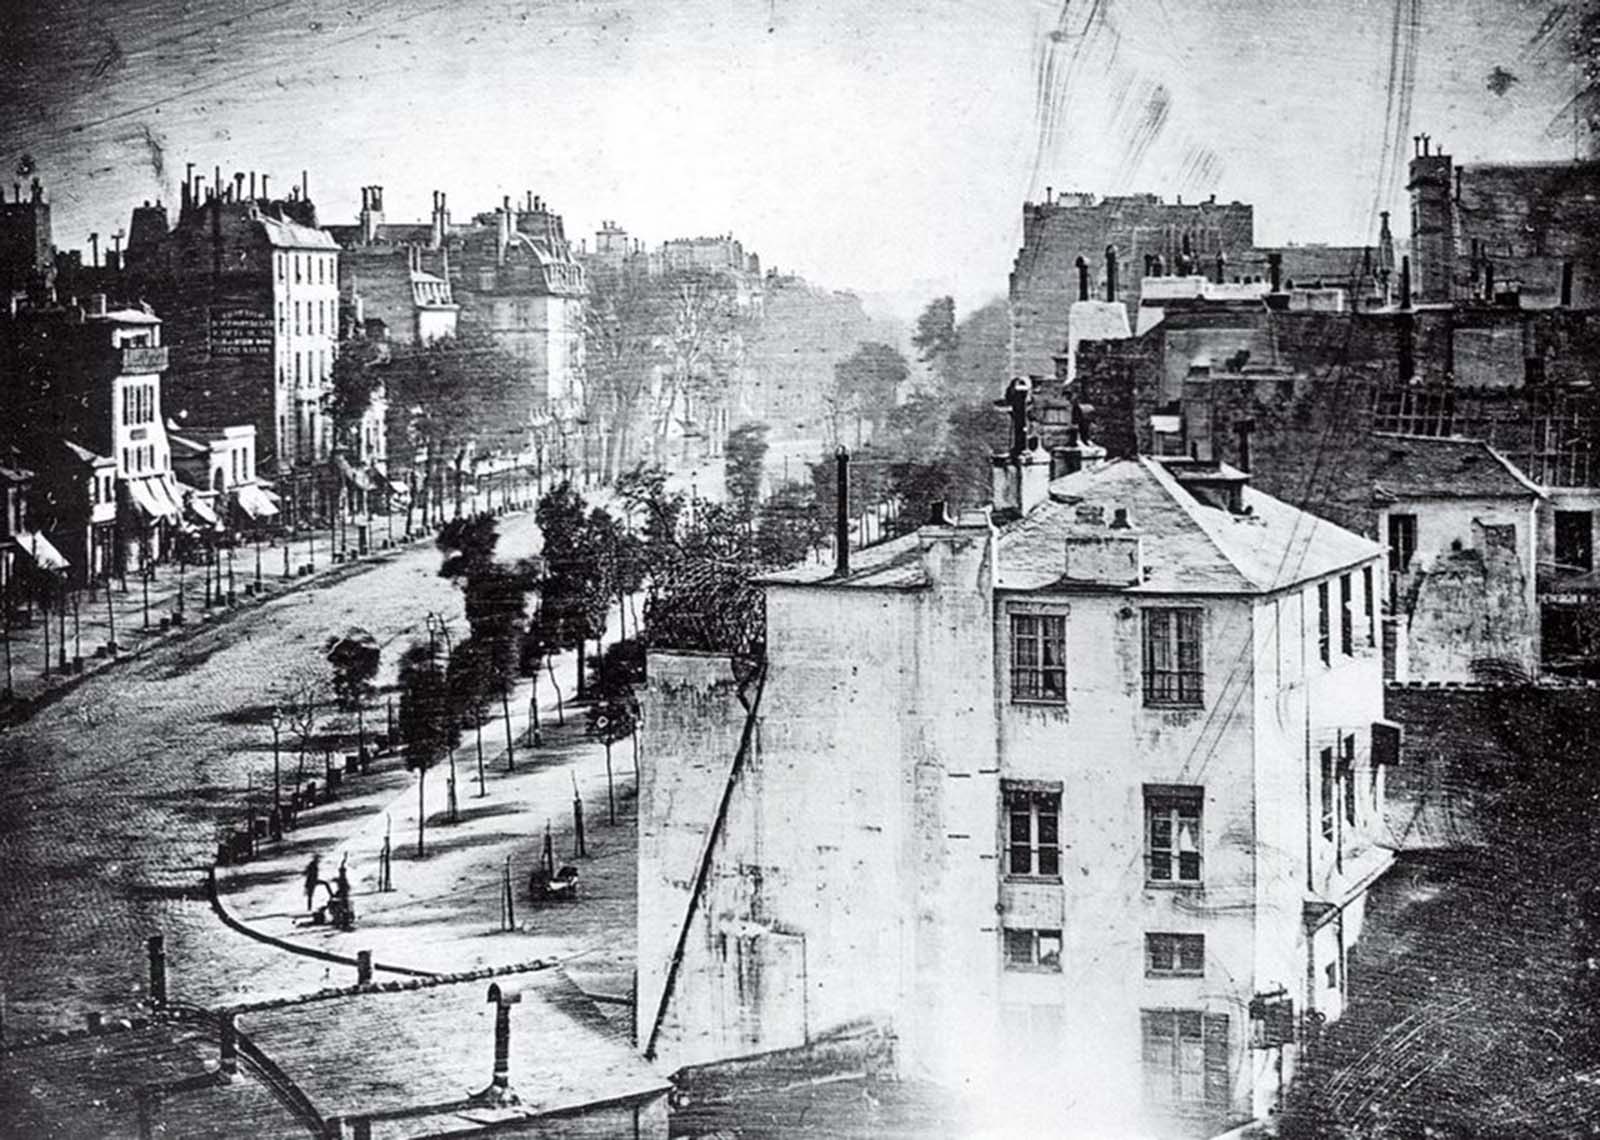 Boulevard Du Temple, 1839